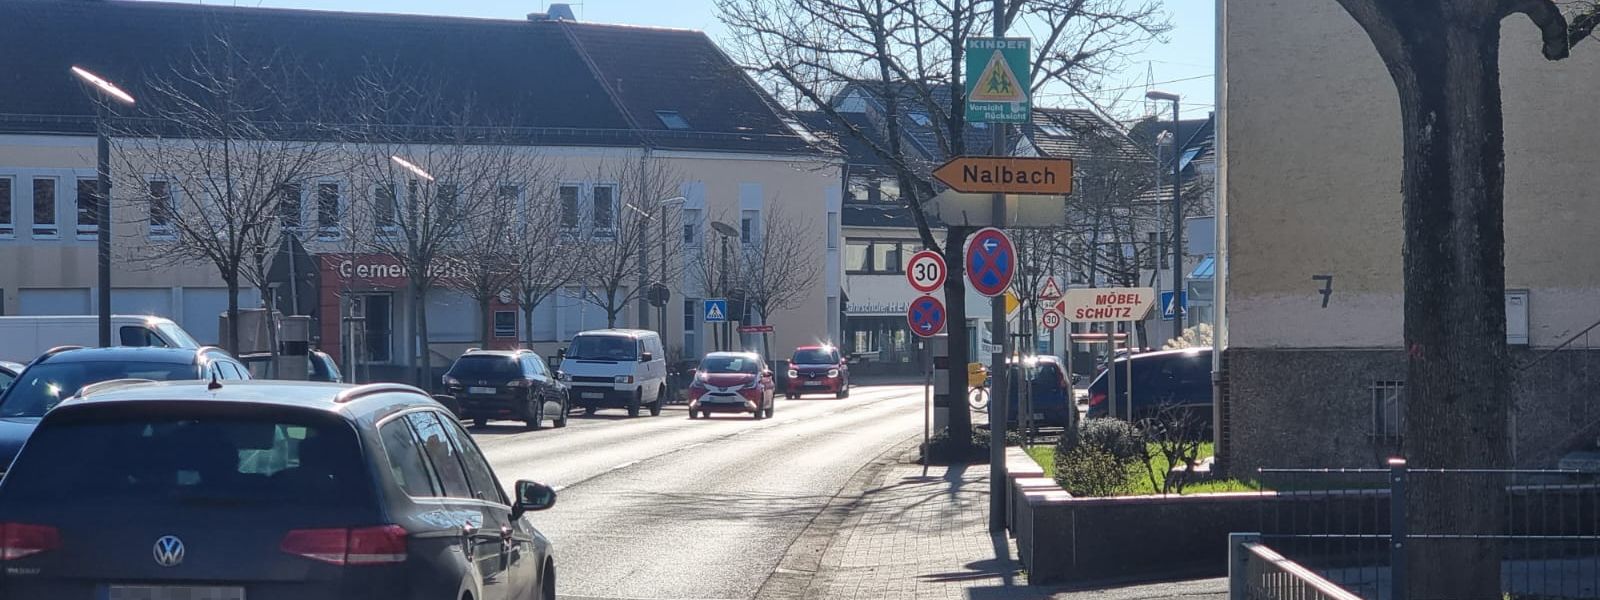 Messstelle „Dillingen OT Diefflen, Düppenweilerstraße“ (30 km/h): Verfahren eingestellt wegen unzureichender Beschilderung